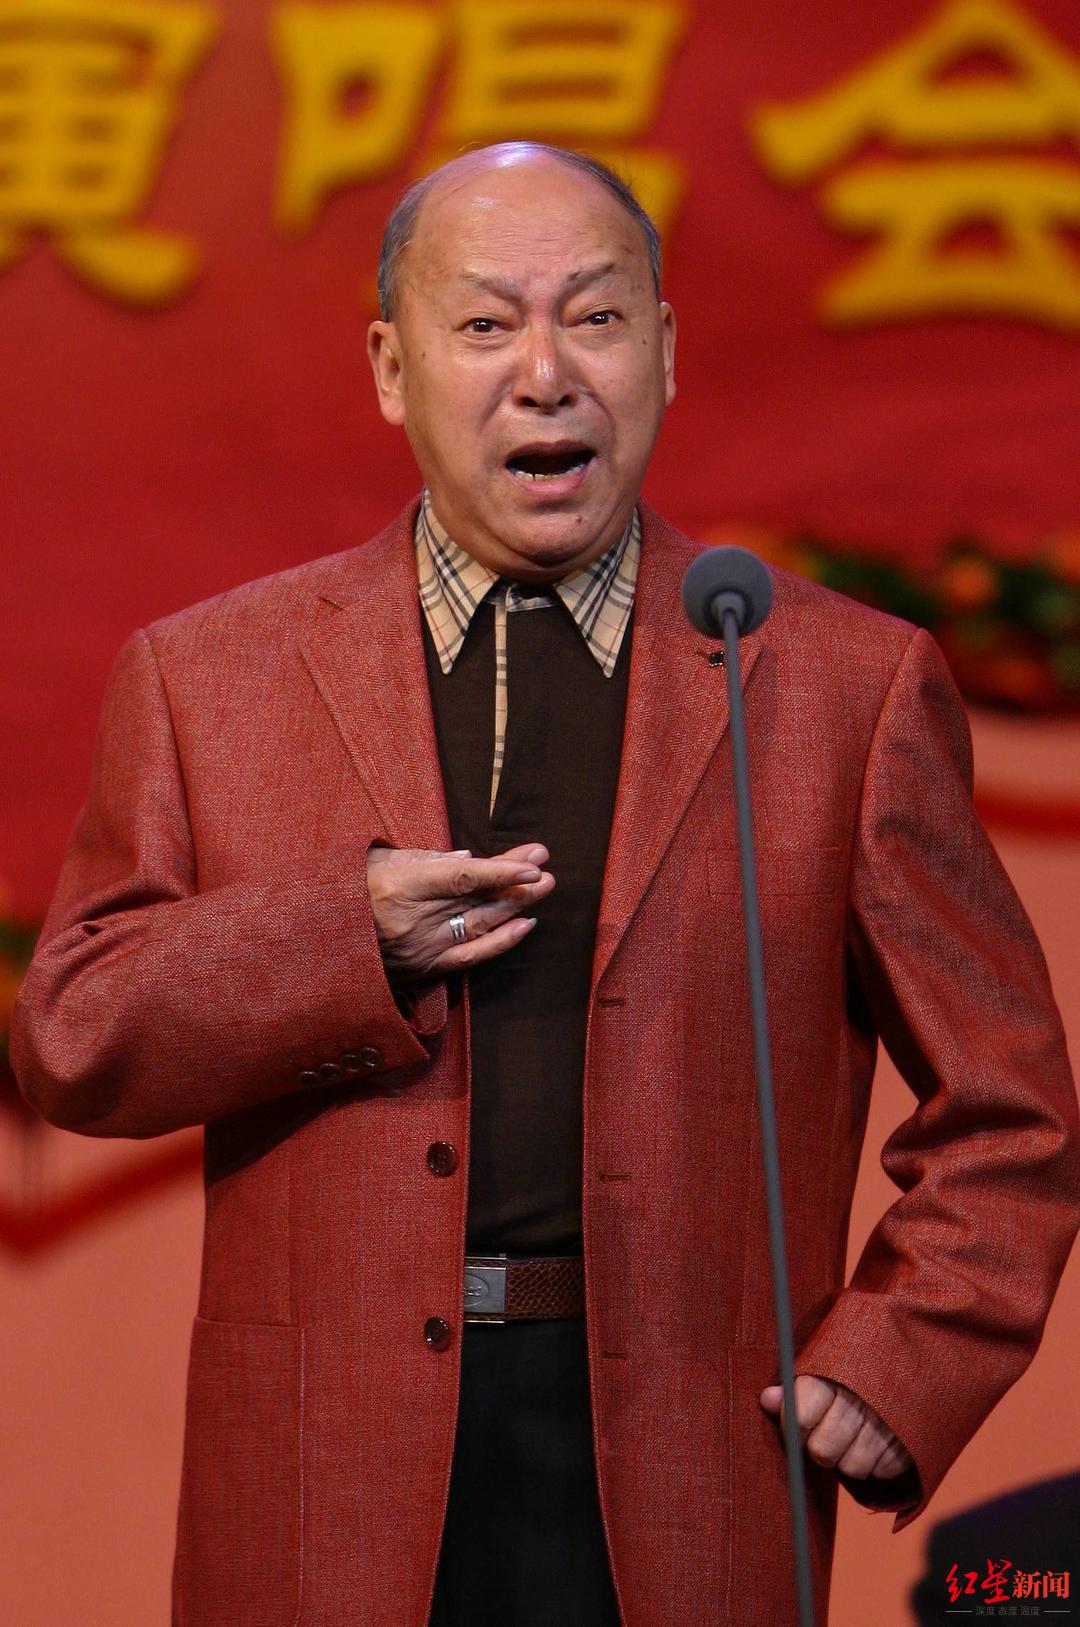 著名京剧表演艺术家沈福存因病去世 享年87岁 他是沈铁梅之父